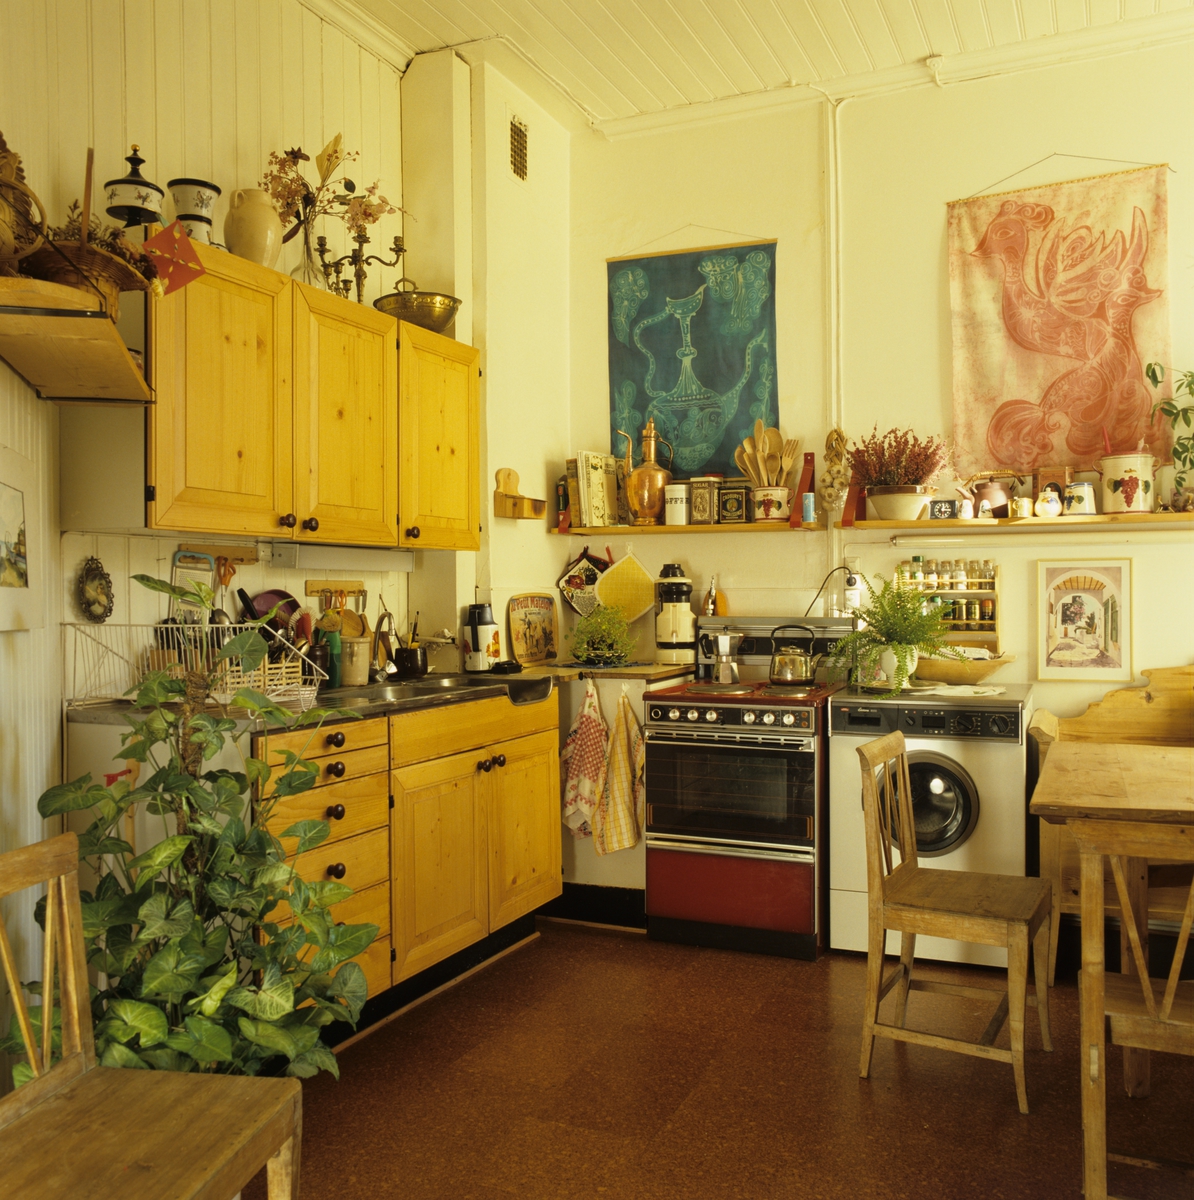 Kombinert arbeids- og oppholdskjøkken i nyoppusset leilighet på Frogner i Oslo. Fotografert for Bonytt 1986.